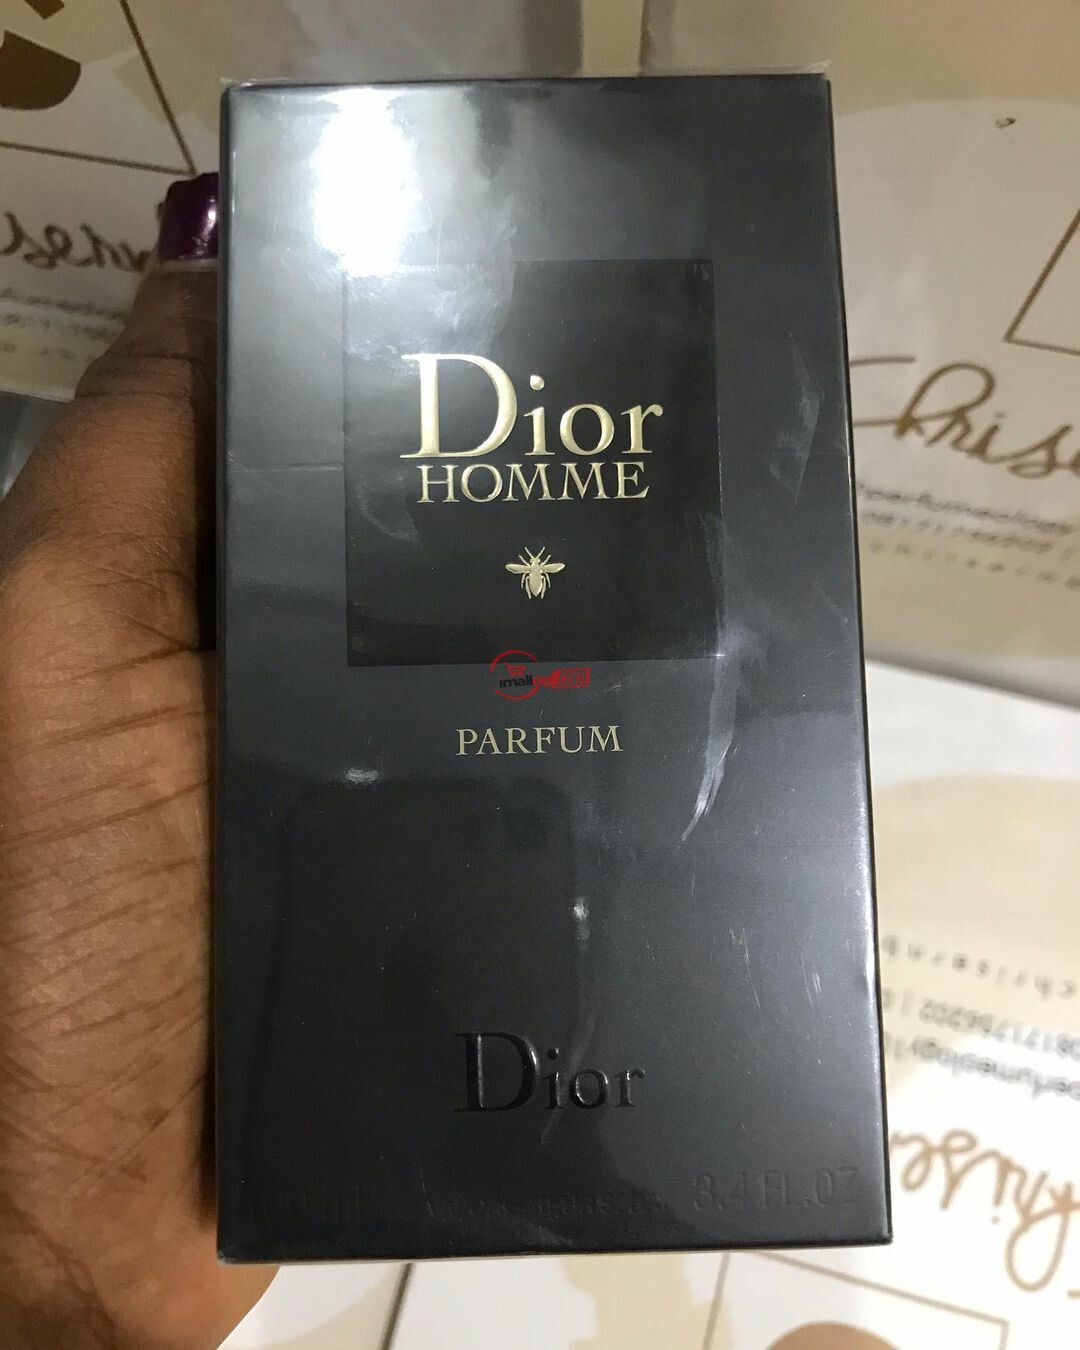 Dior Hommie perfume